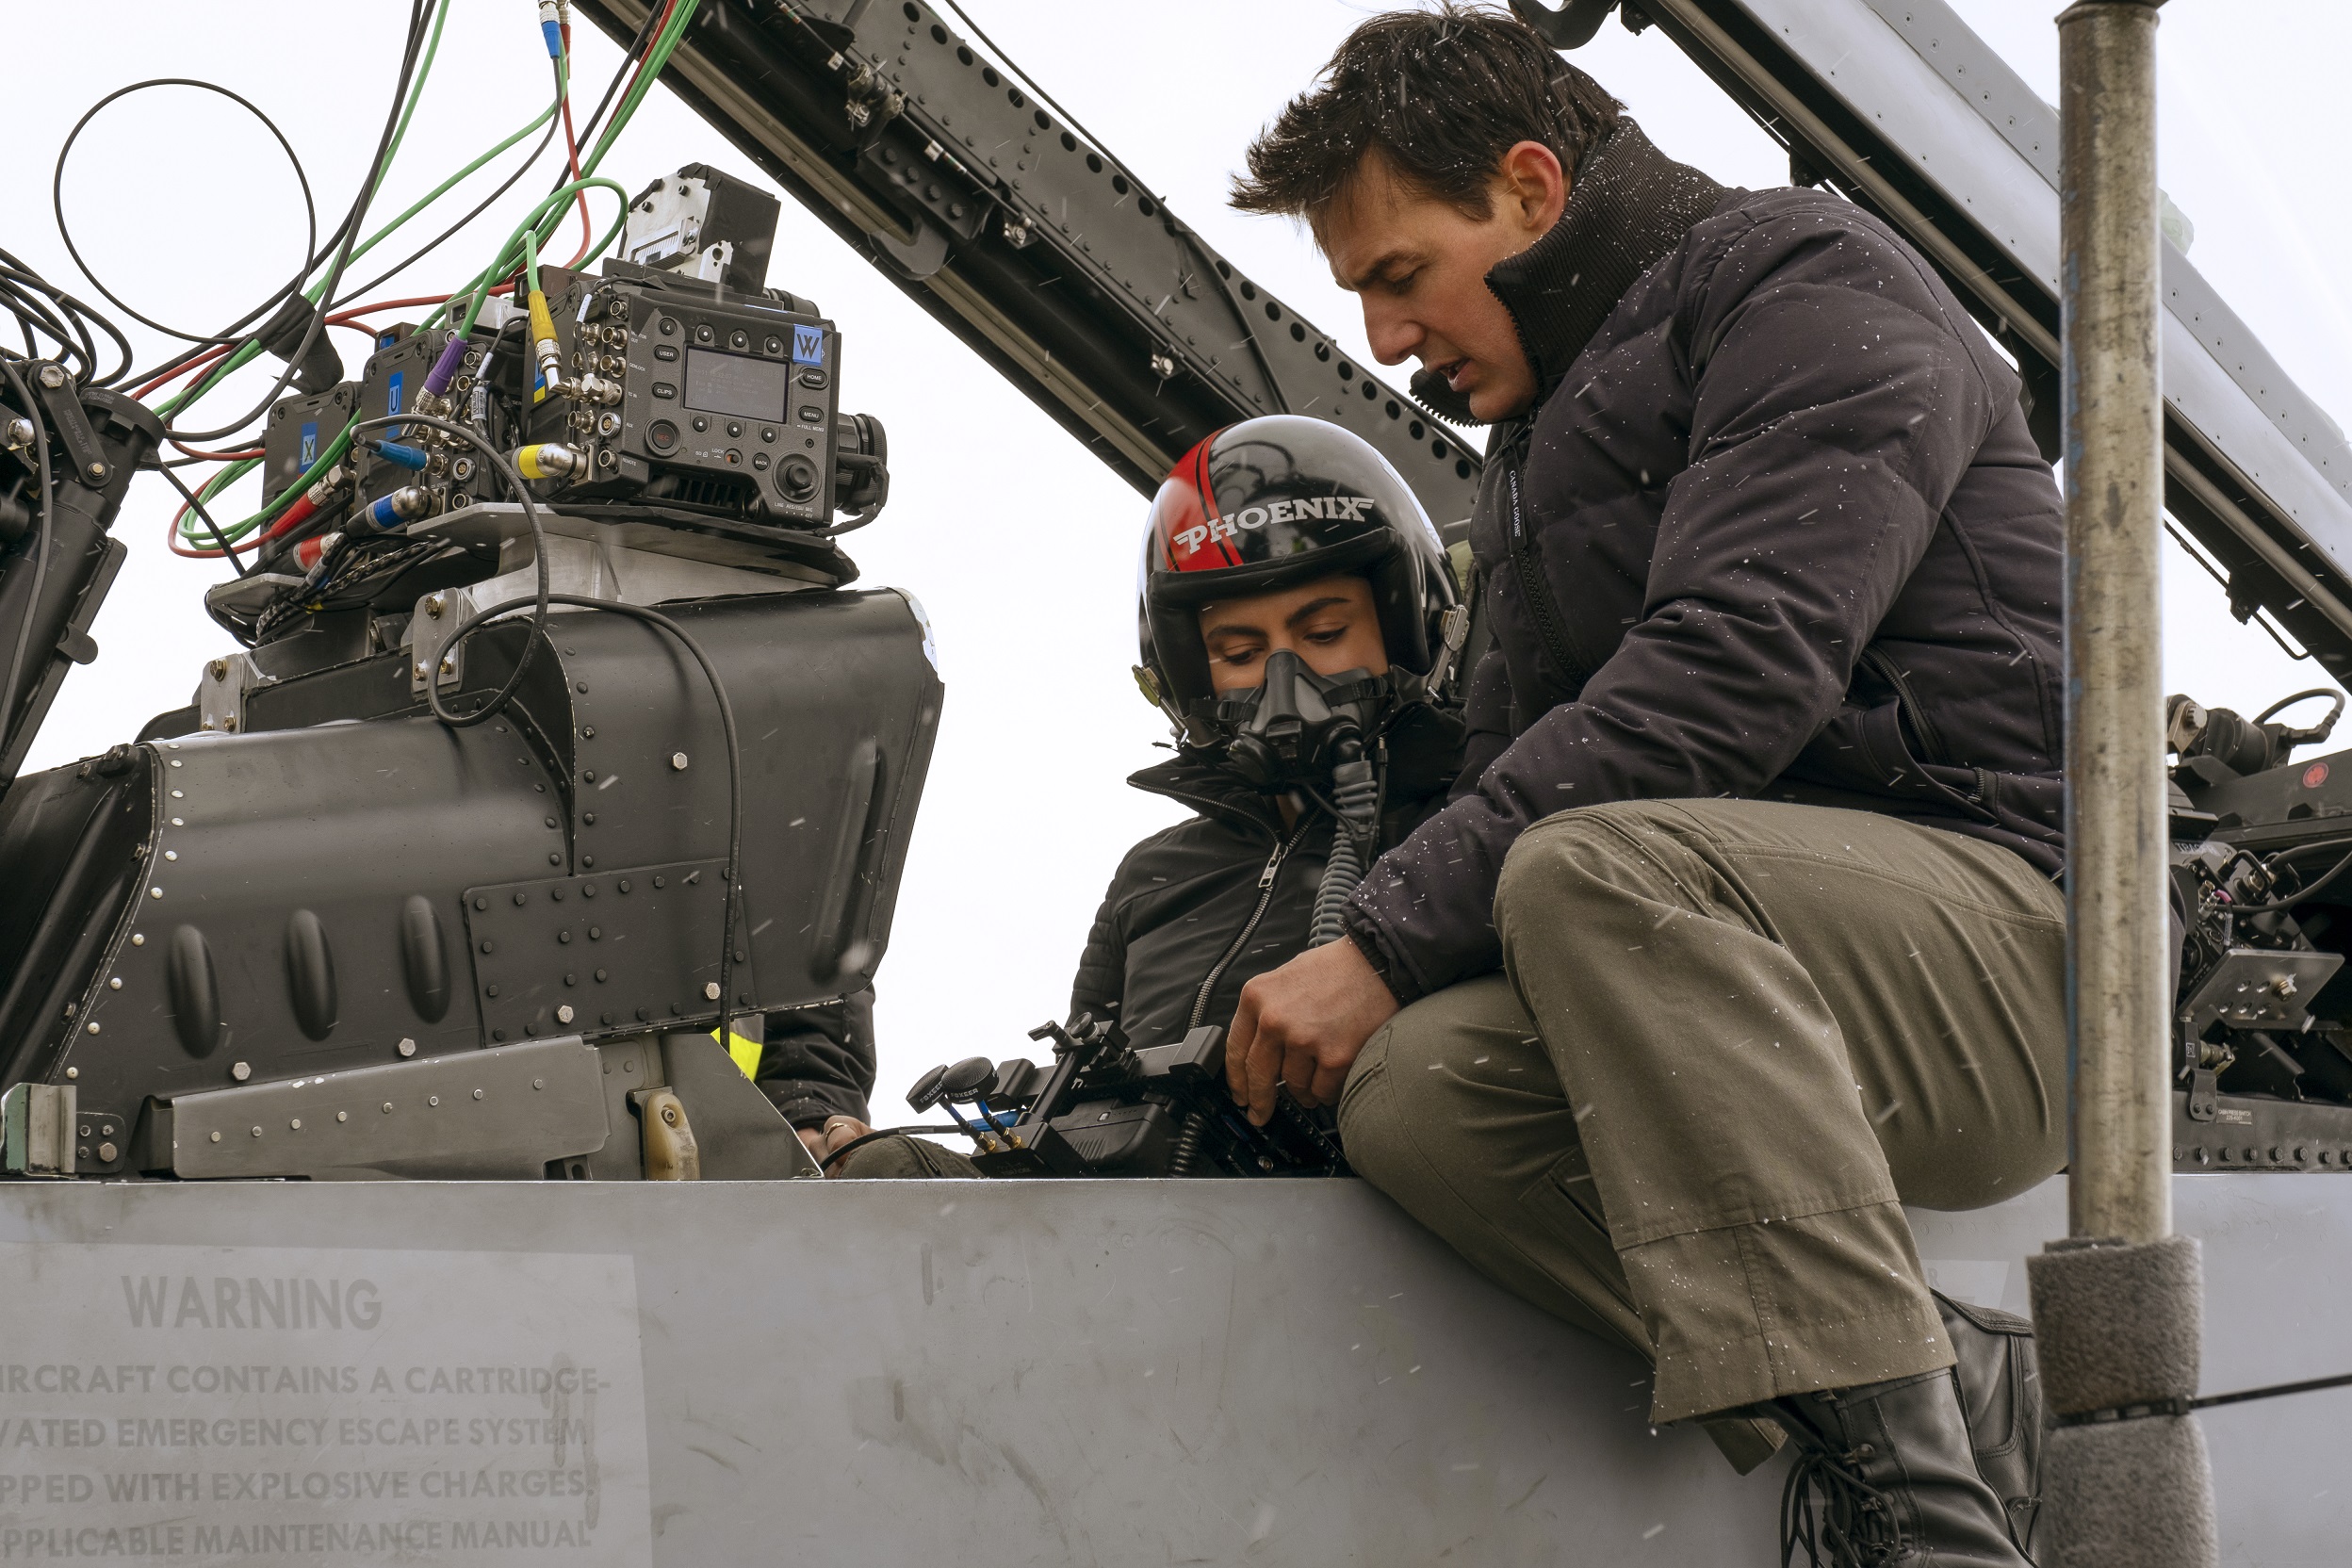 睽違 36 年，派拉蒙影業將於 5 月 25 日搶先美國推出動作鉅片《捍衛戰士：獨行俠》。作為 1986 年電影《捍衛戰士》續集，同樣選擇在美國聖地牙哥海軍航空基地拍攝，導演不僅找來《遺落戰境》 Joseph Kosinski 執掌，其主要演員更由 Tom Cruise 擔綱要角。